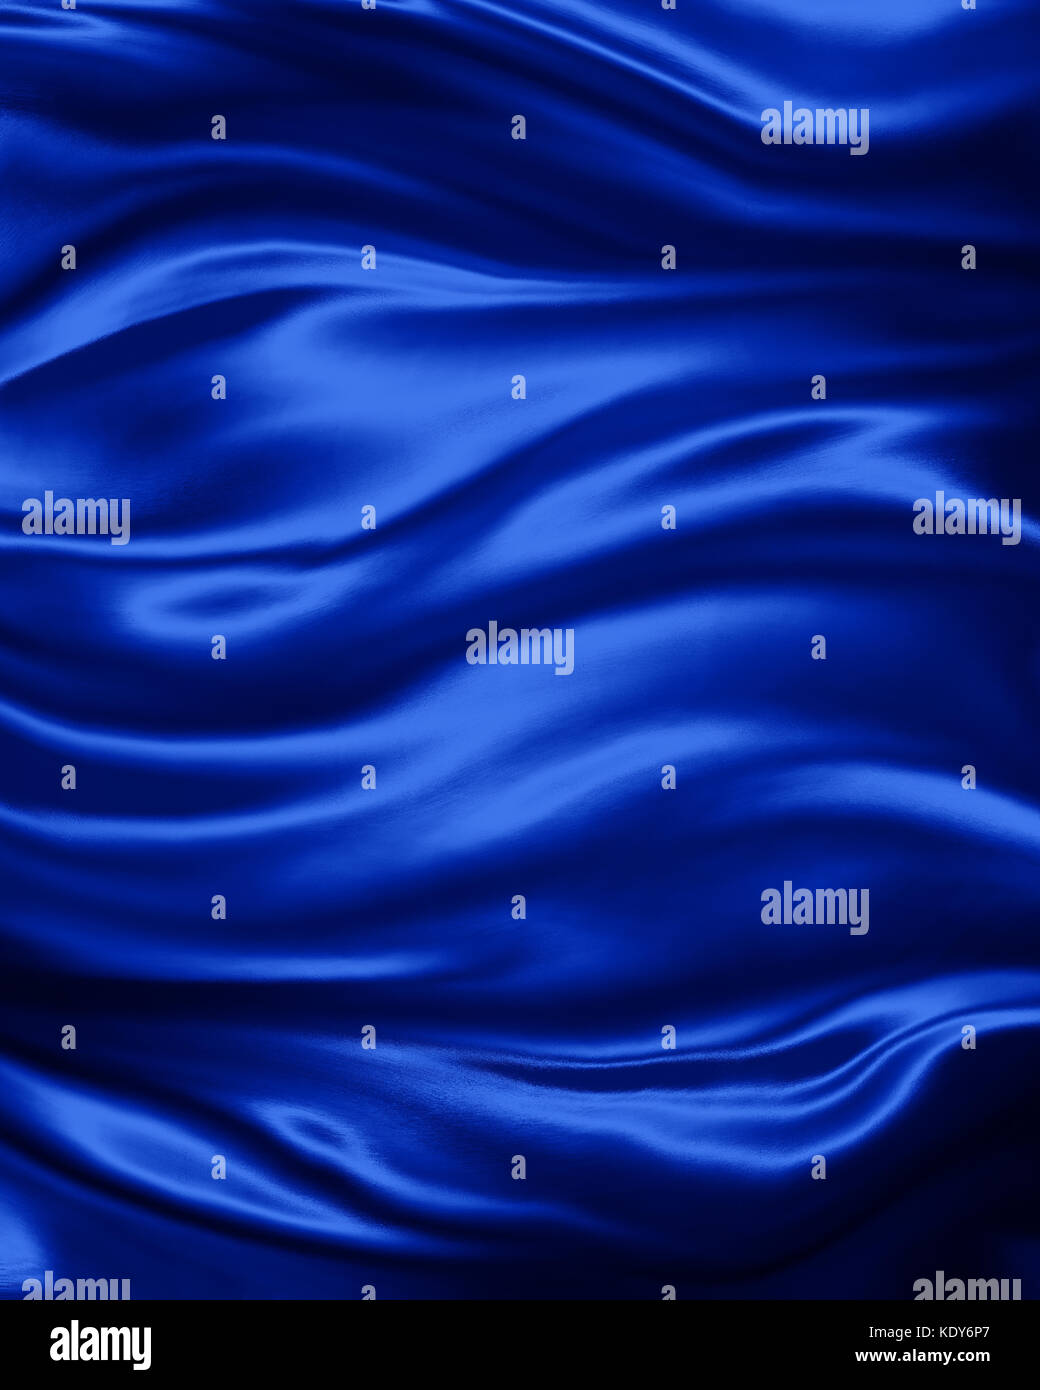 Luxe élégant fond bleu saphir avec plis de tissu drapé ondulé et lisse la texture de la soie avec les rides et les plis en fluide Banque D'Images